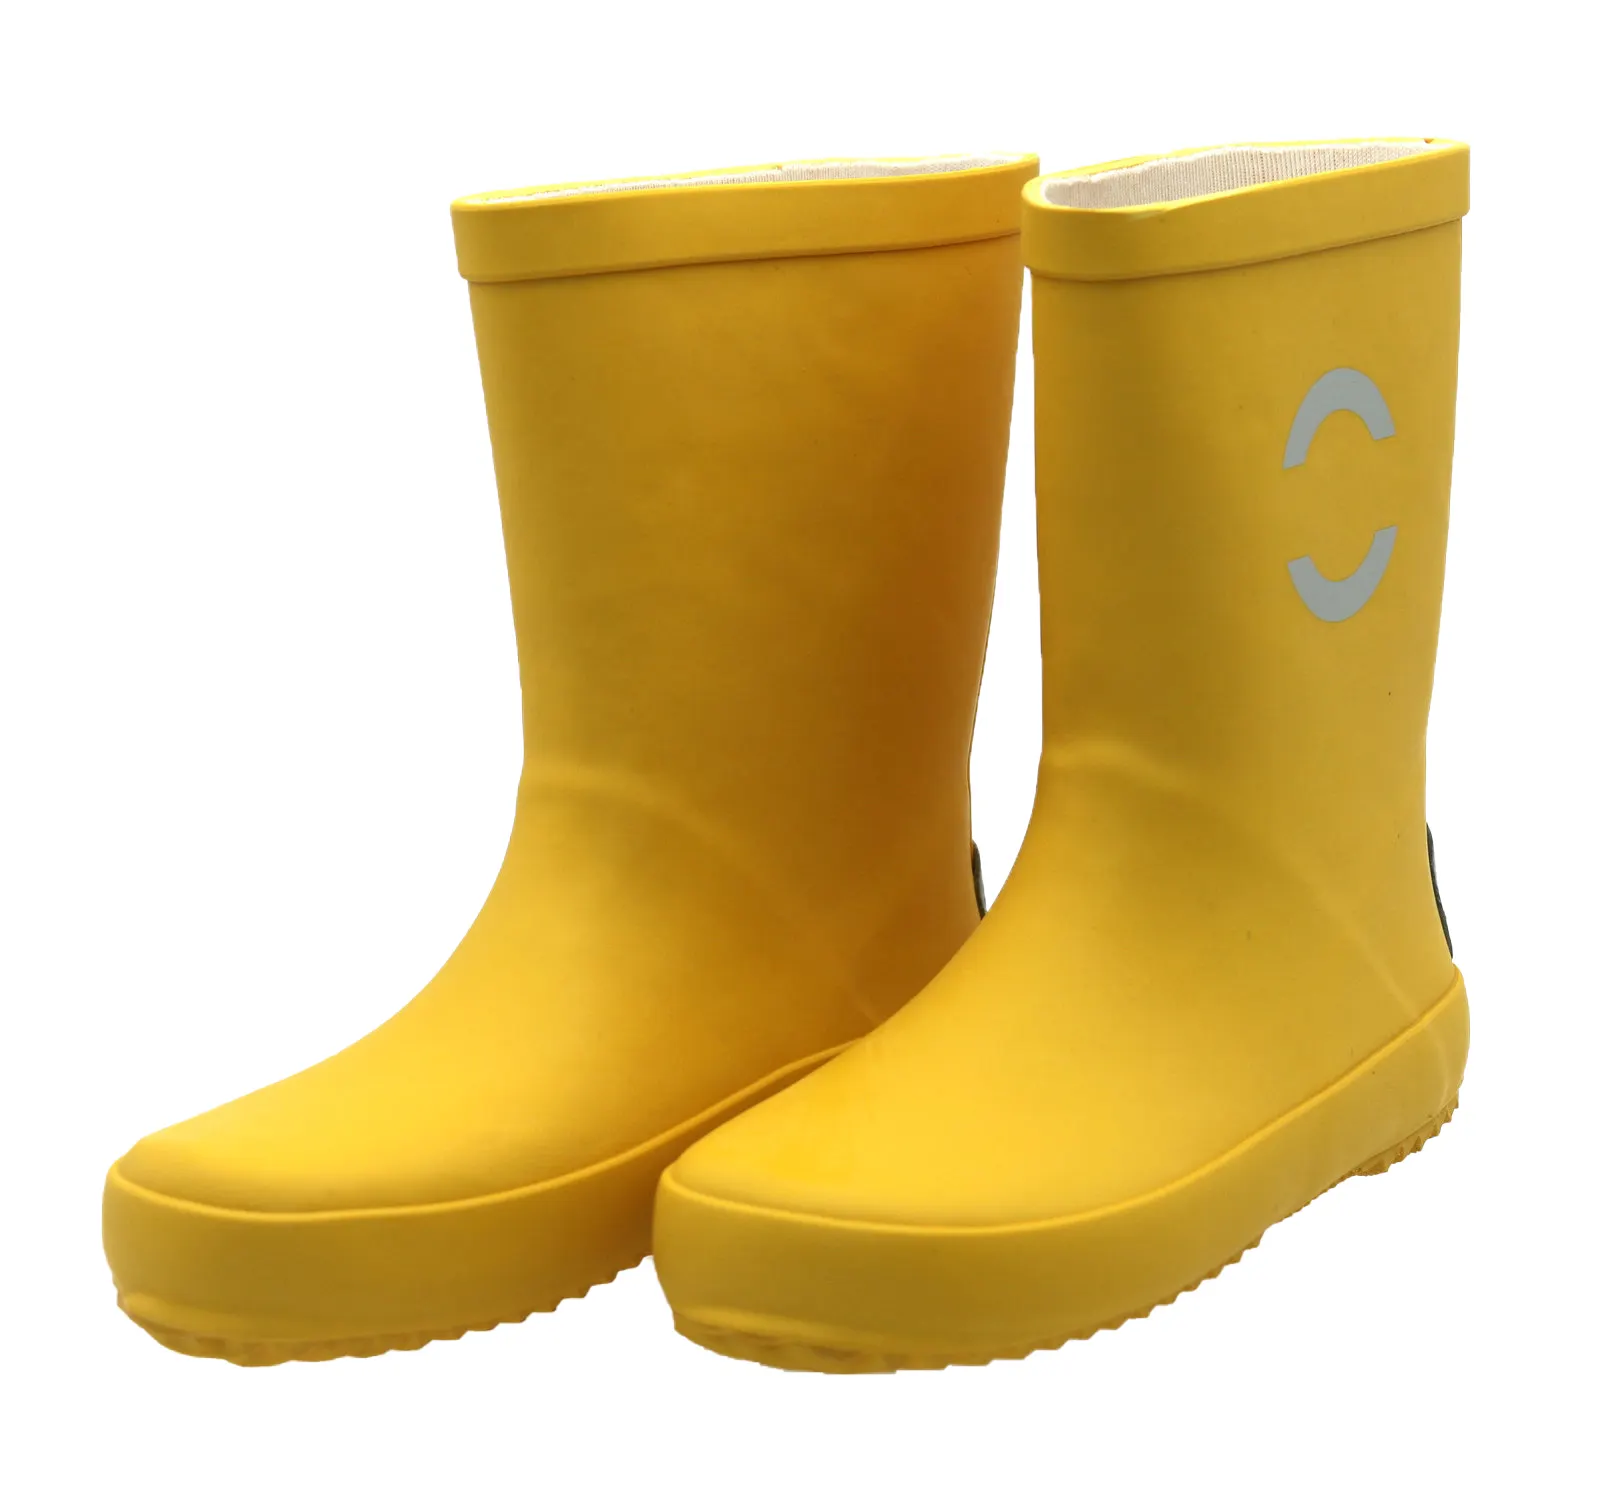 Bottes de pluie Wellington en caoutchouc jaune solide et imperméables pour enfants, bon marché